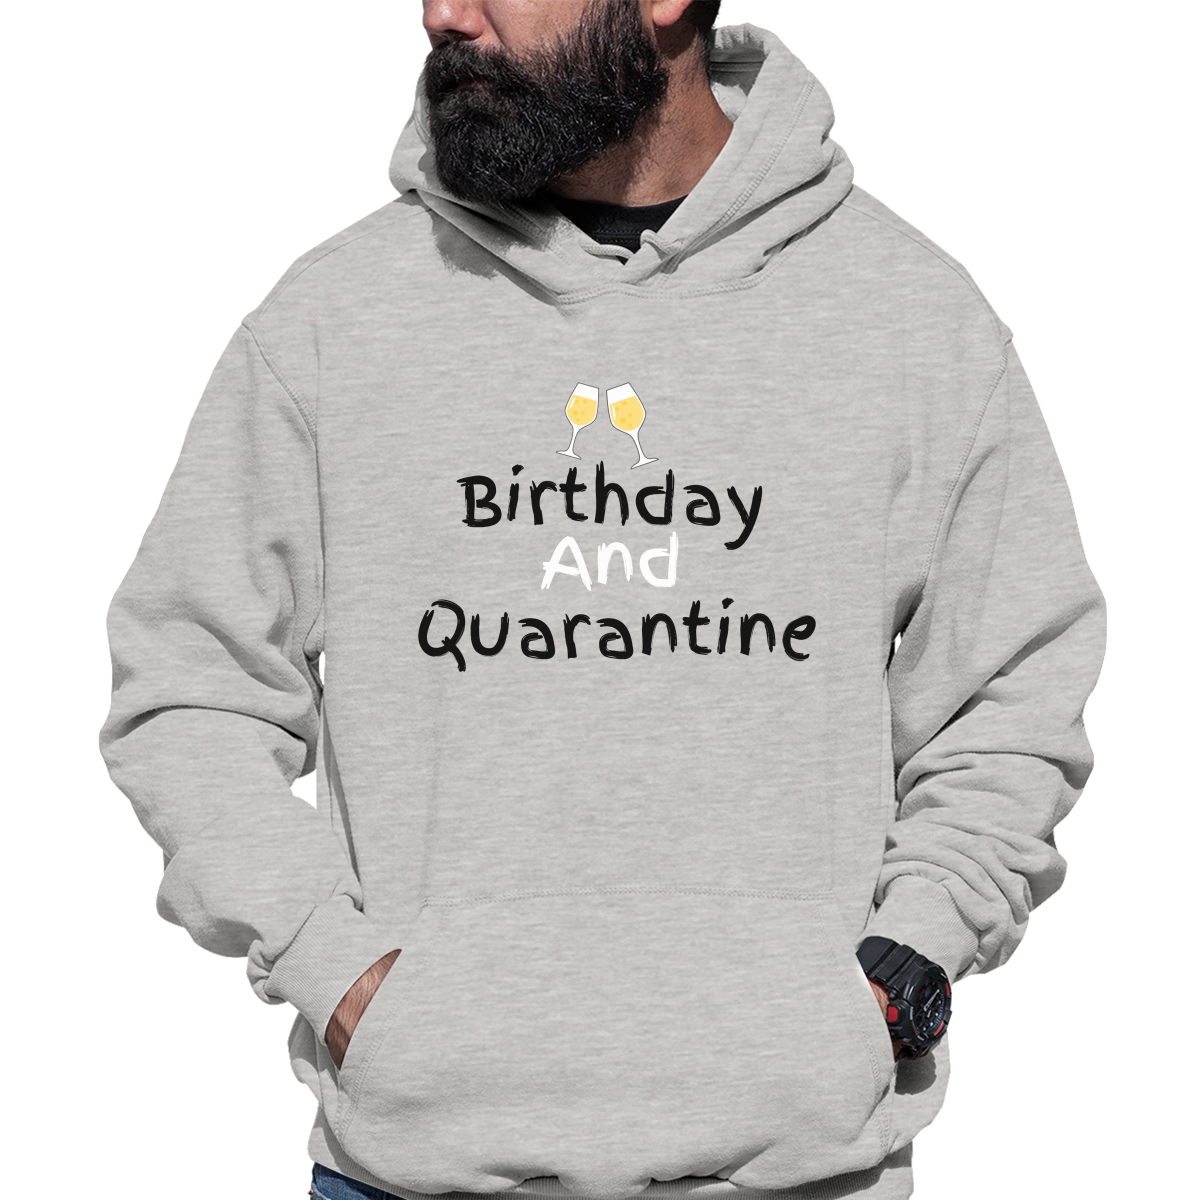 Birthday and Quarantine Unisex Hoodie | Gray